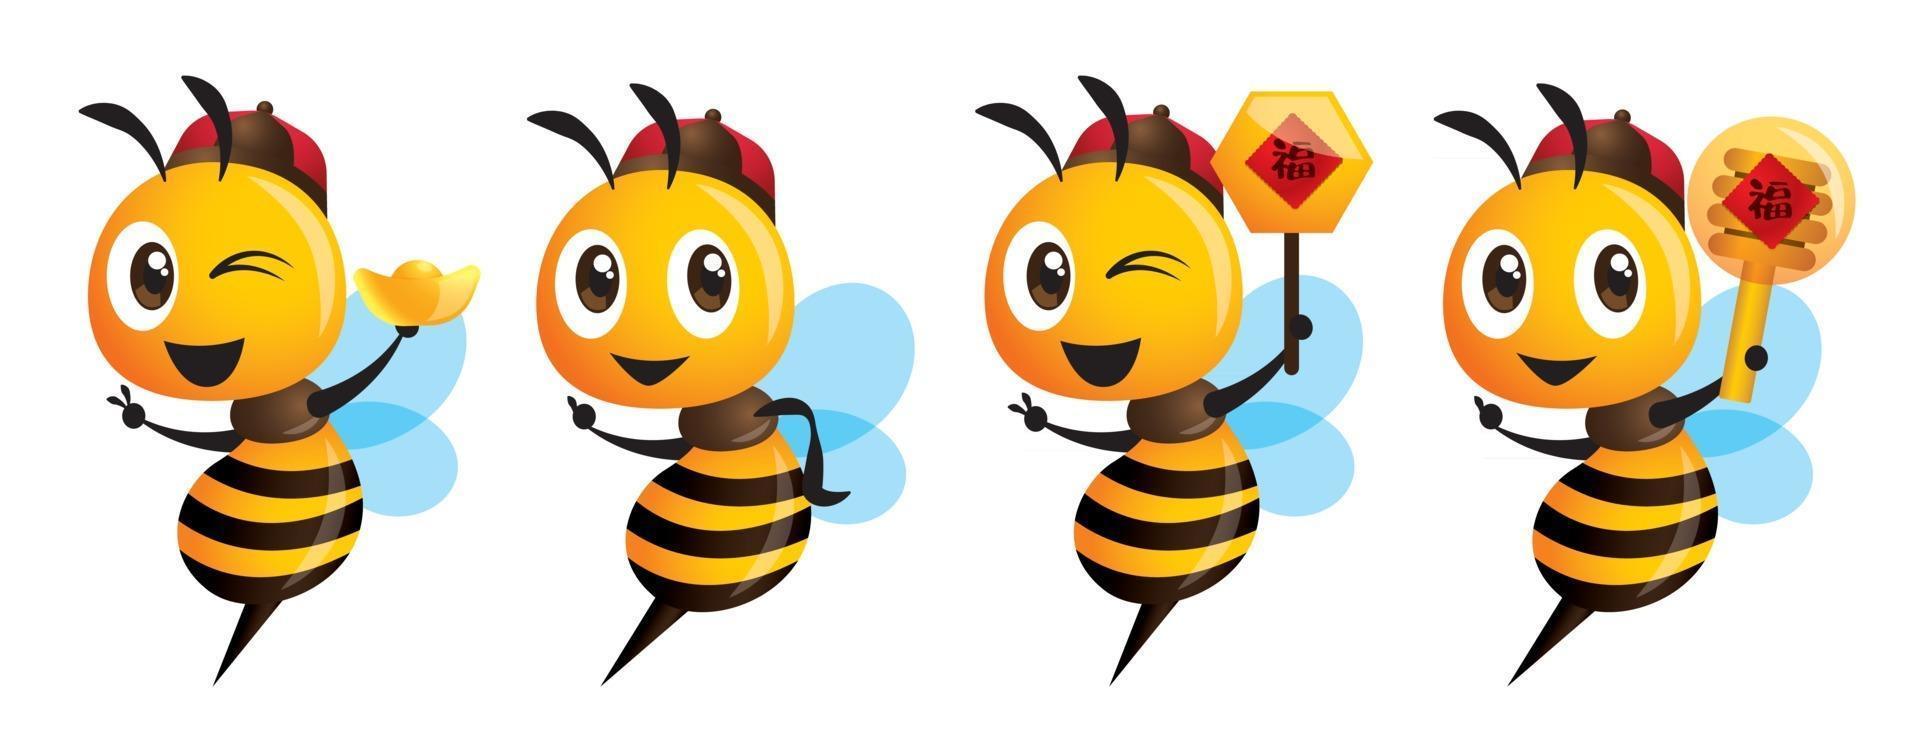 abeja linda de dibujos animados con lingote de oro y cucharón de miel para celebrar el año nuevo chino vector